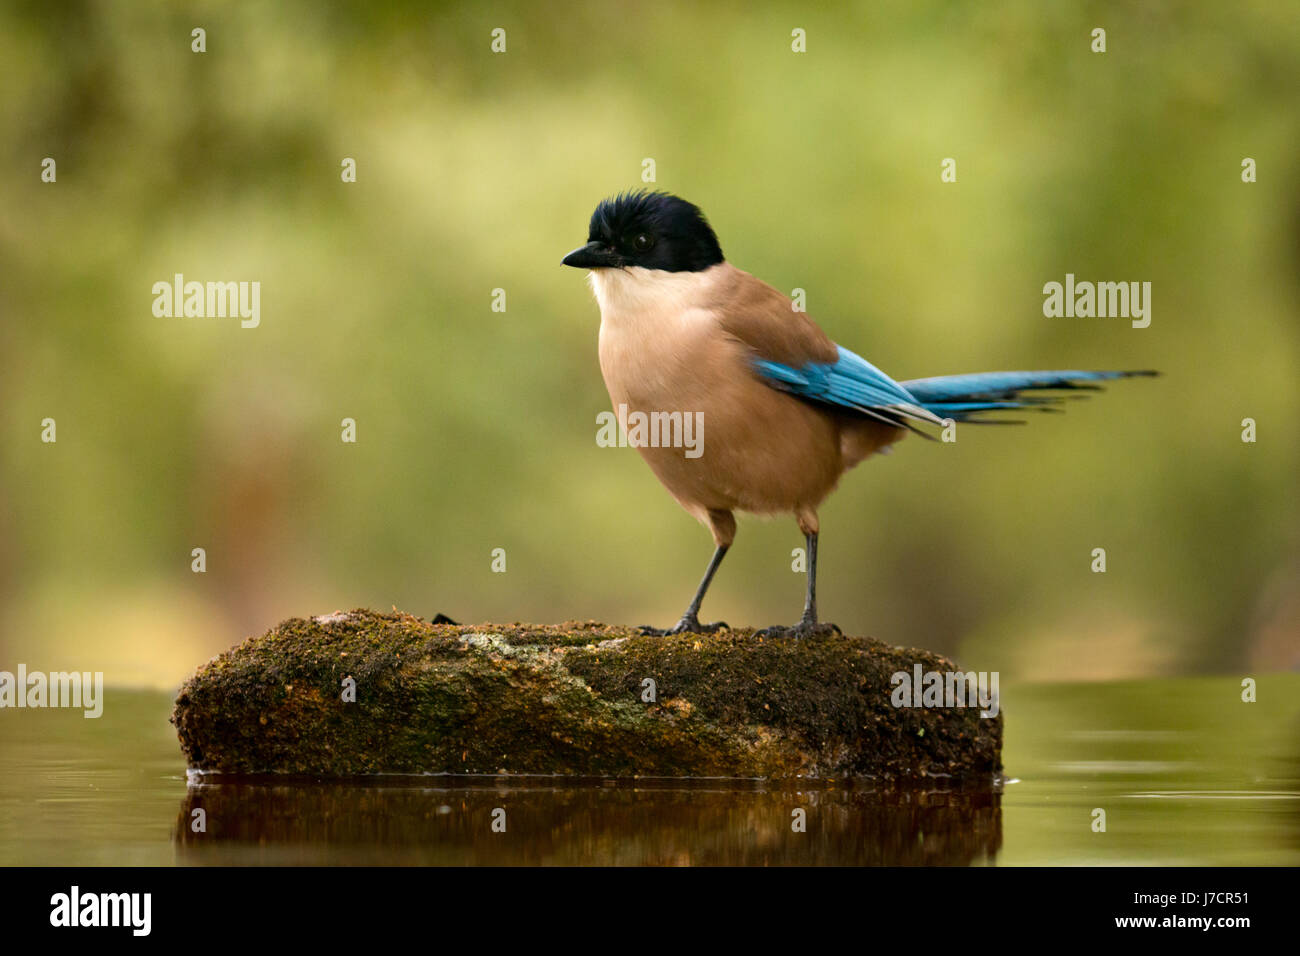 Pájaro negro con cabeza y cola azul sobre una piedra en medio del lago Foto de stock